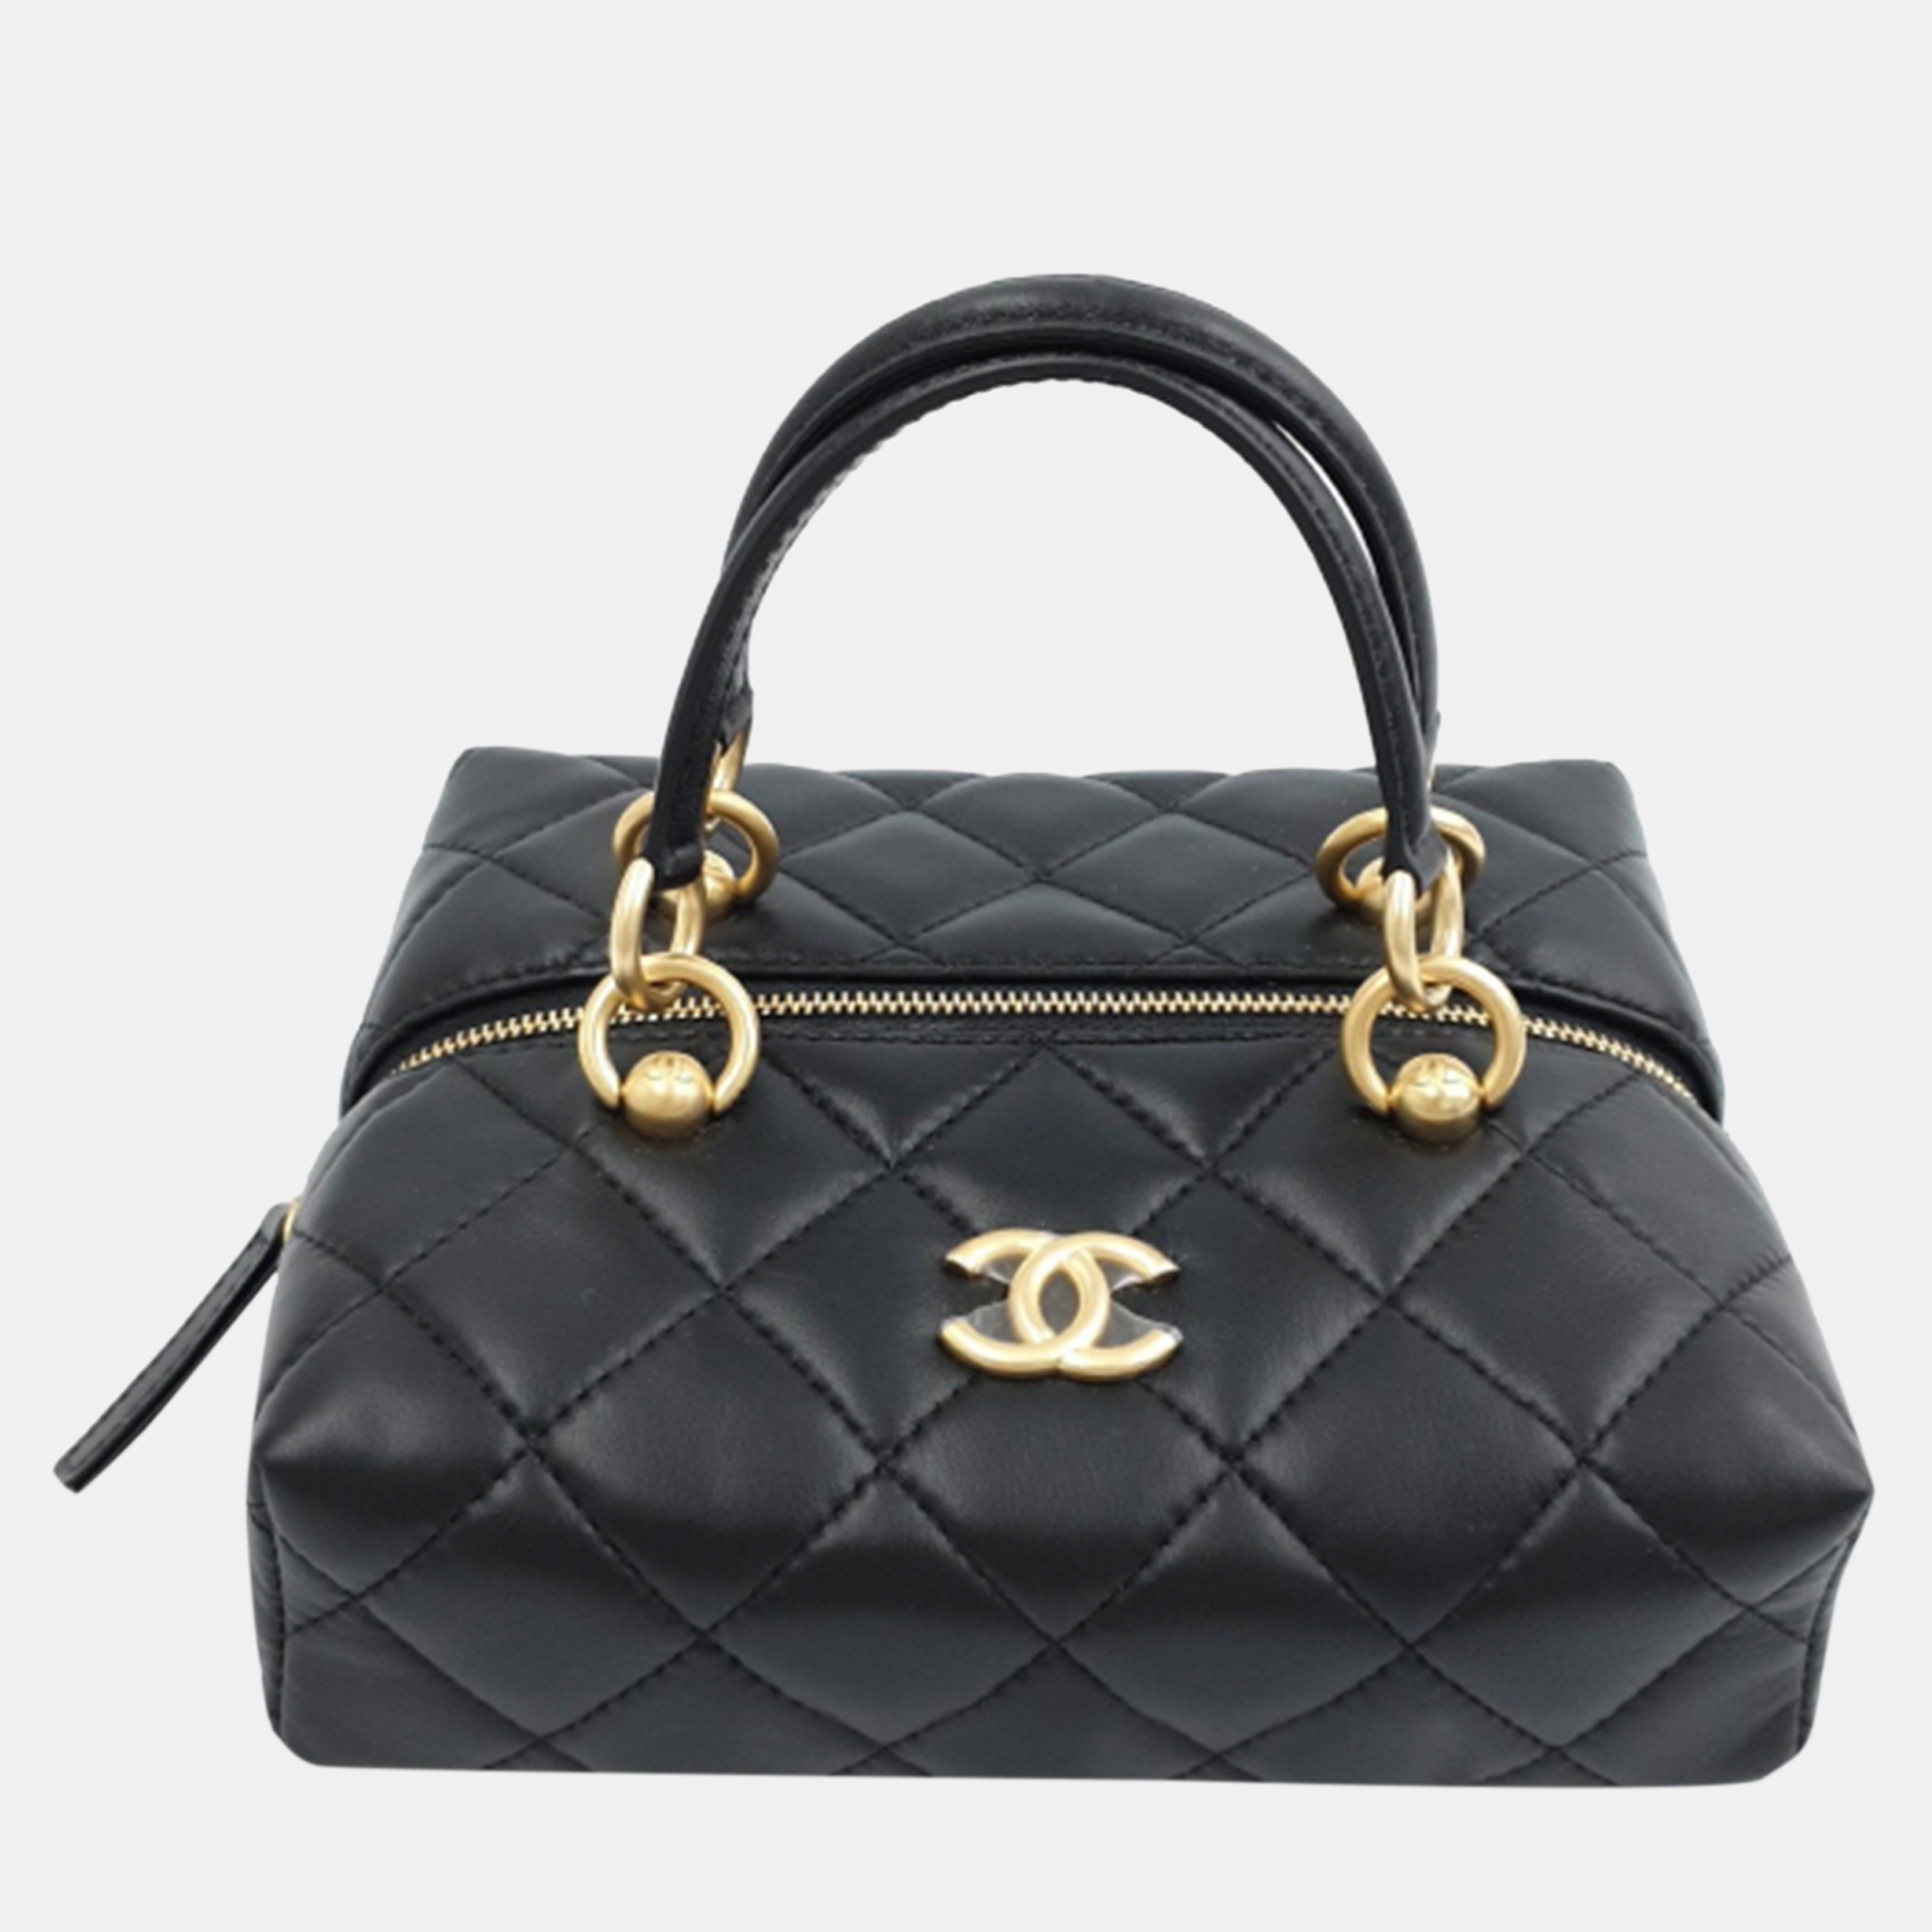 Chanel black leather shoulder bag